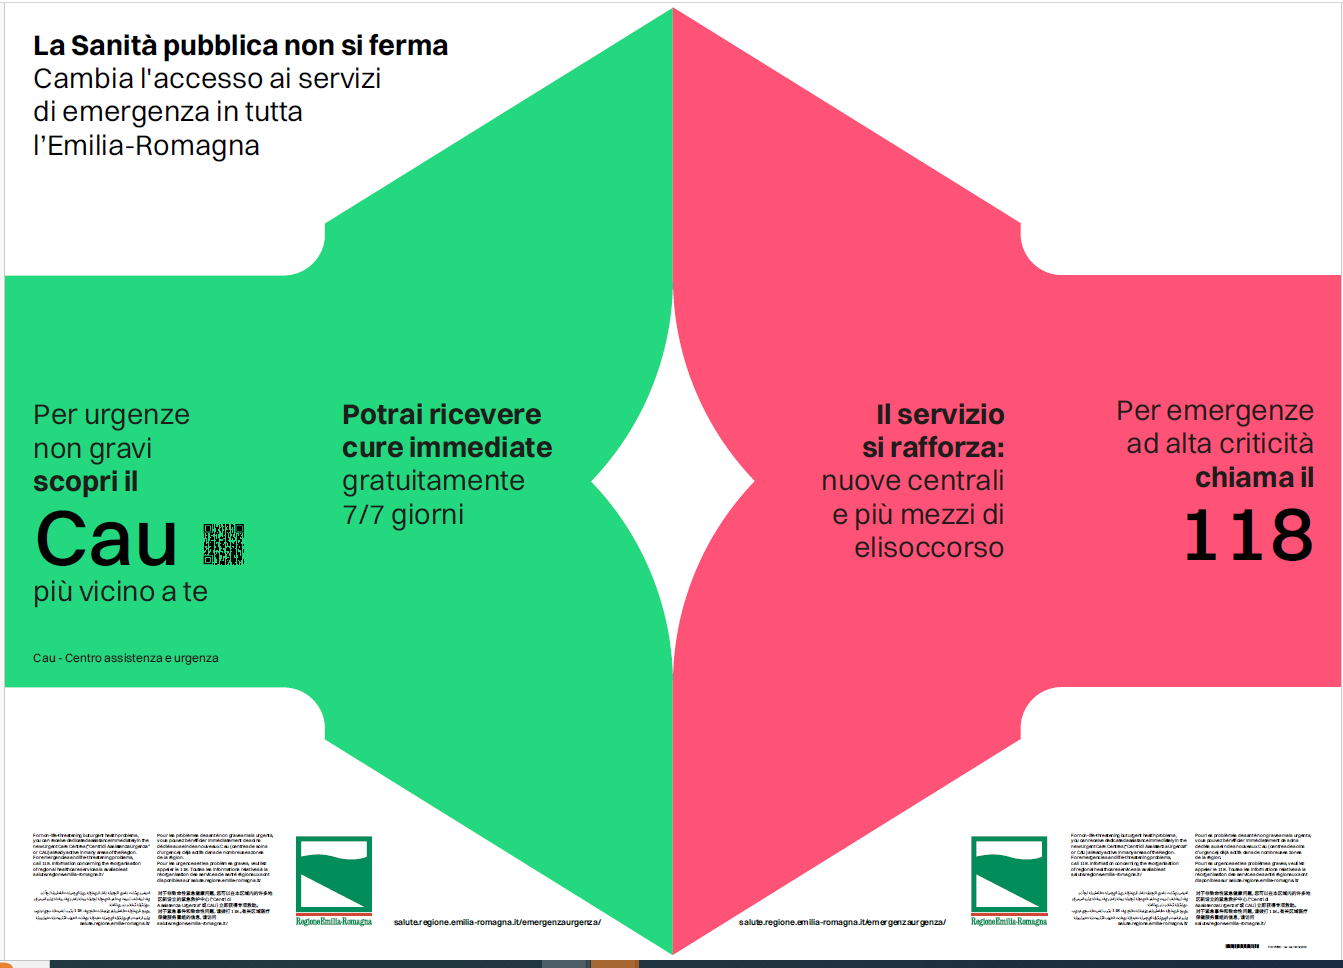 Cambia l’accesso ai servizi di emergenza in tutta l’Emilia-Romagna